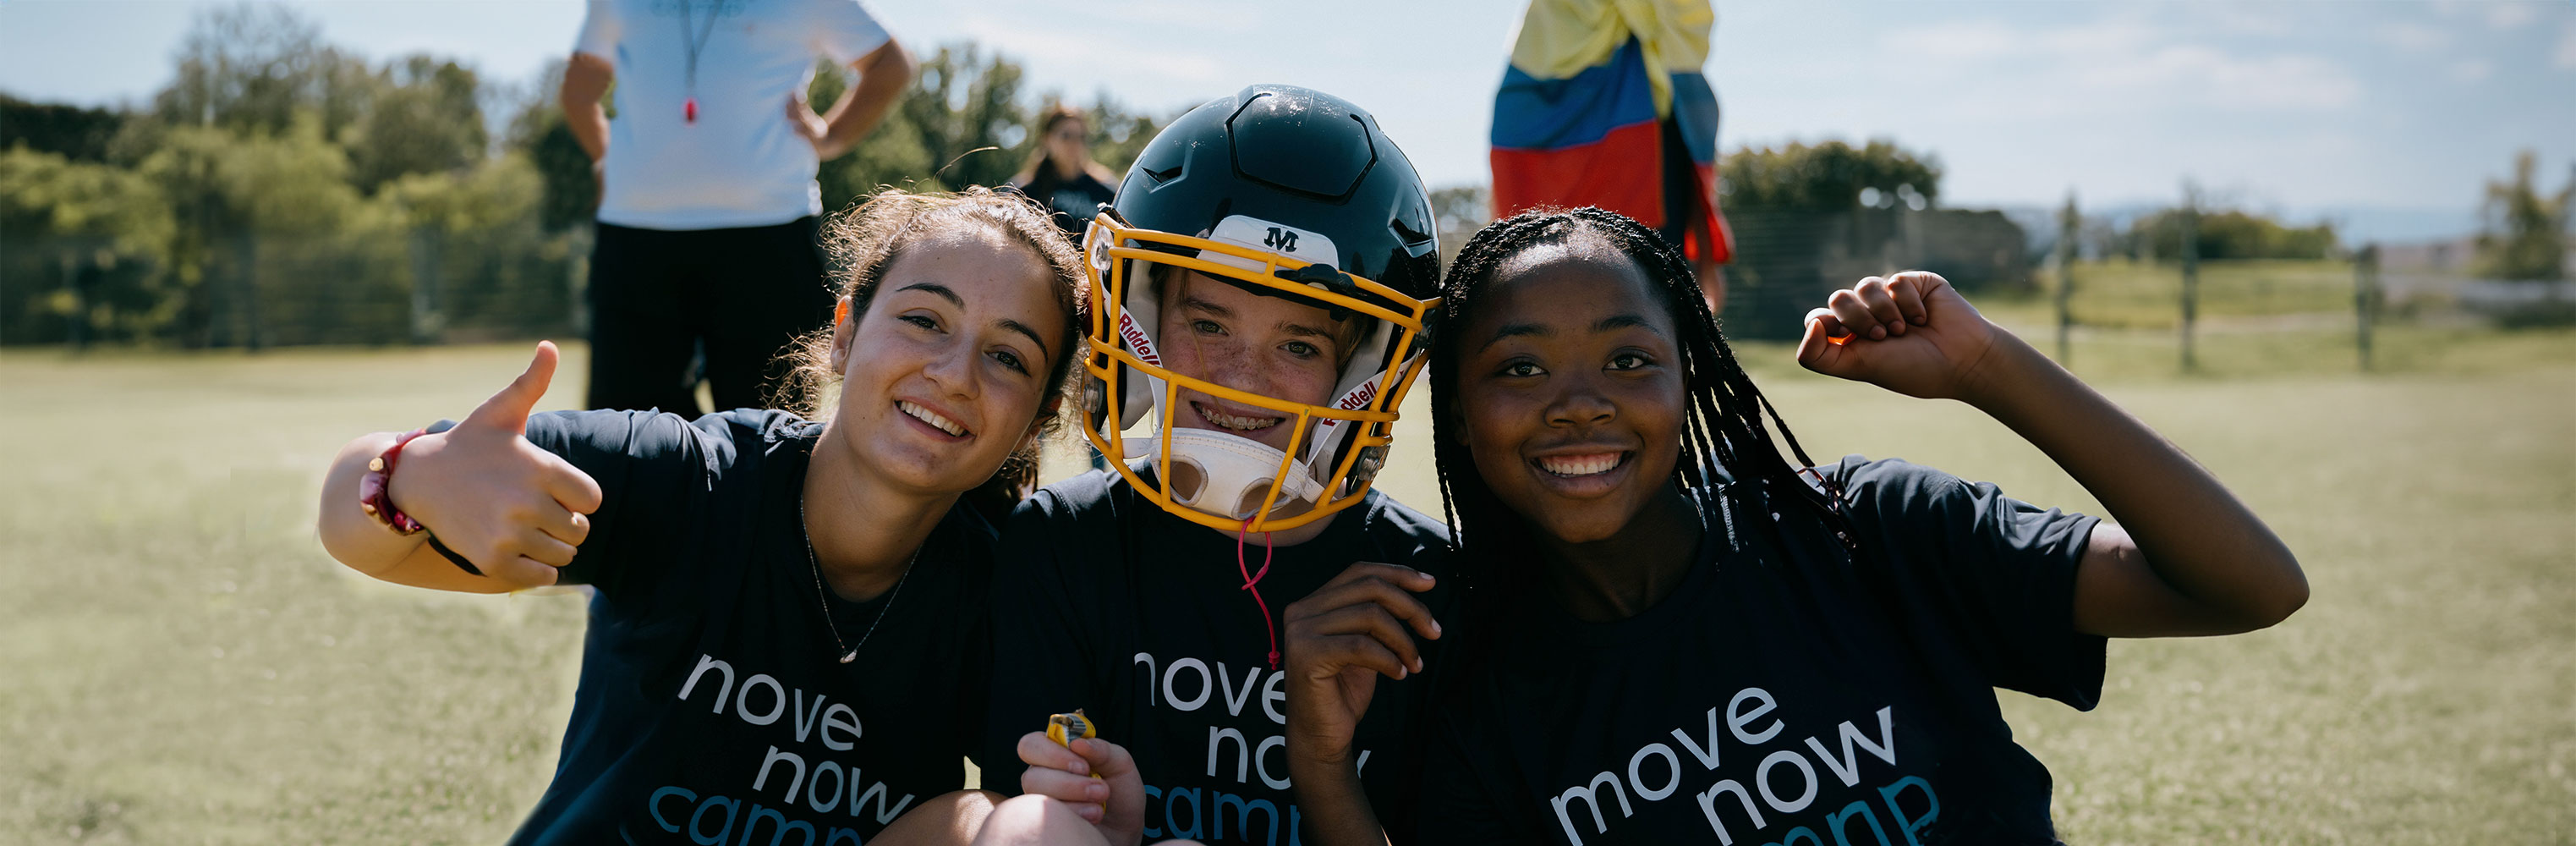 Drei junge Teilnehmerinnen des weltweiten MoveNow Camps blicken fröhlich in die Kamera